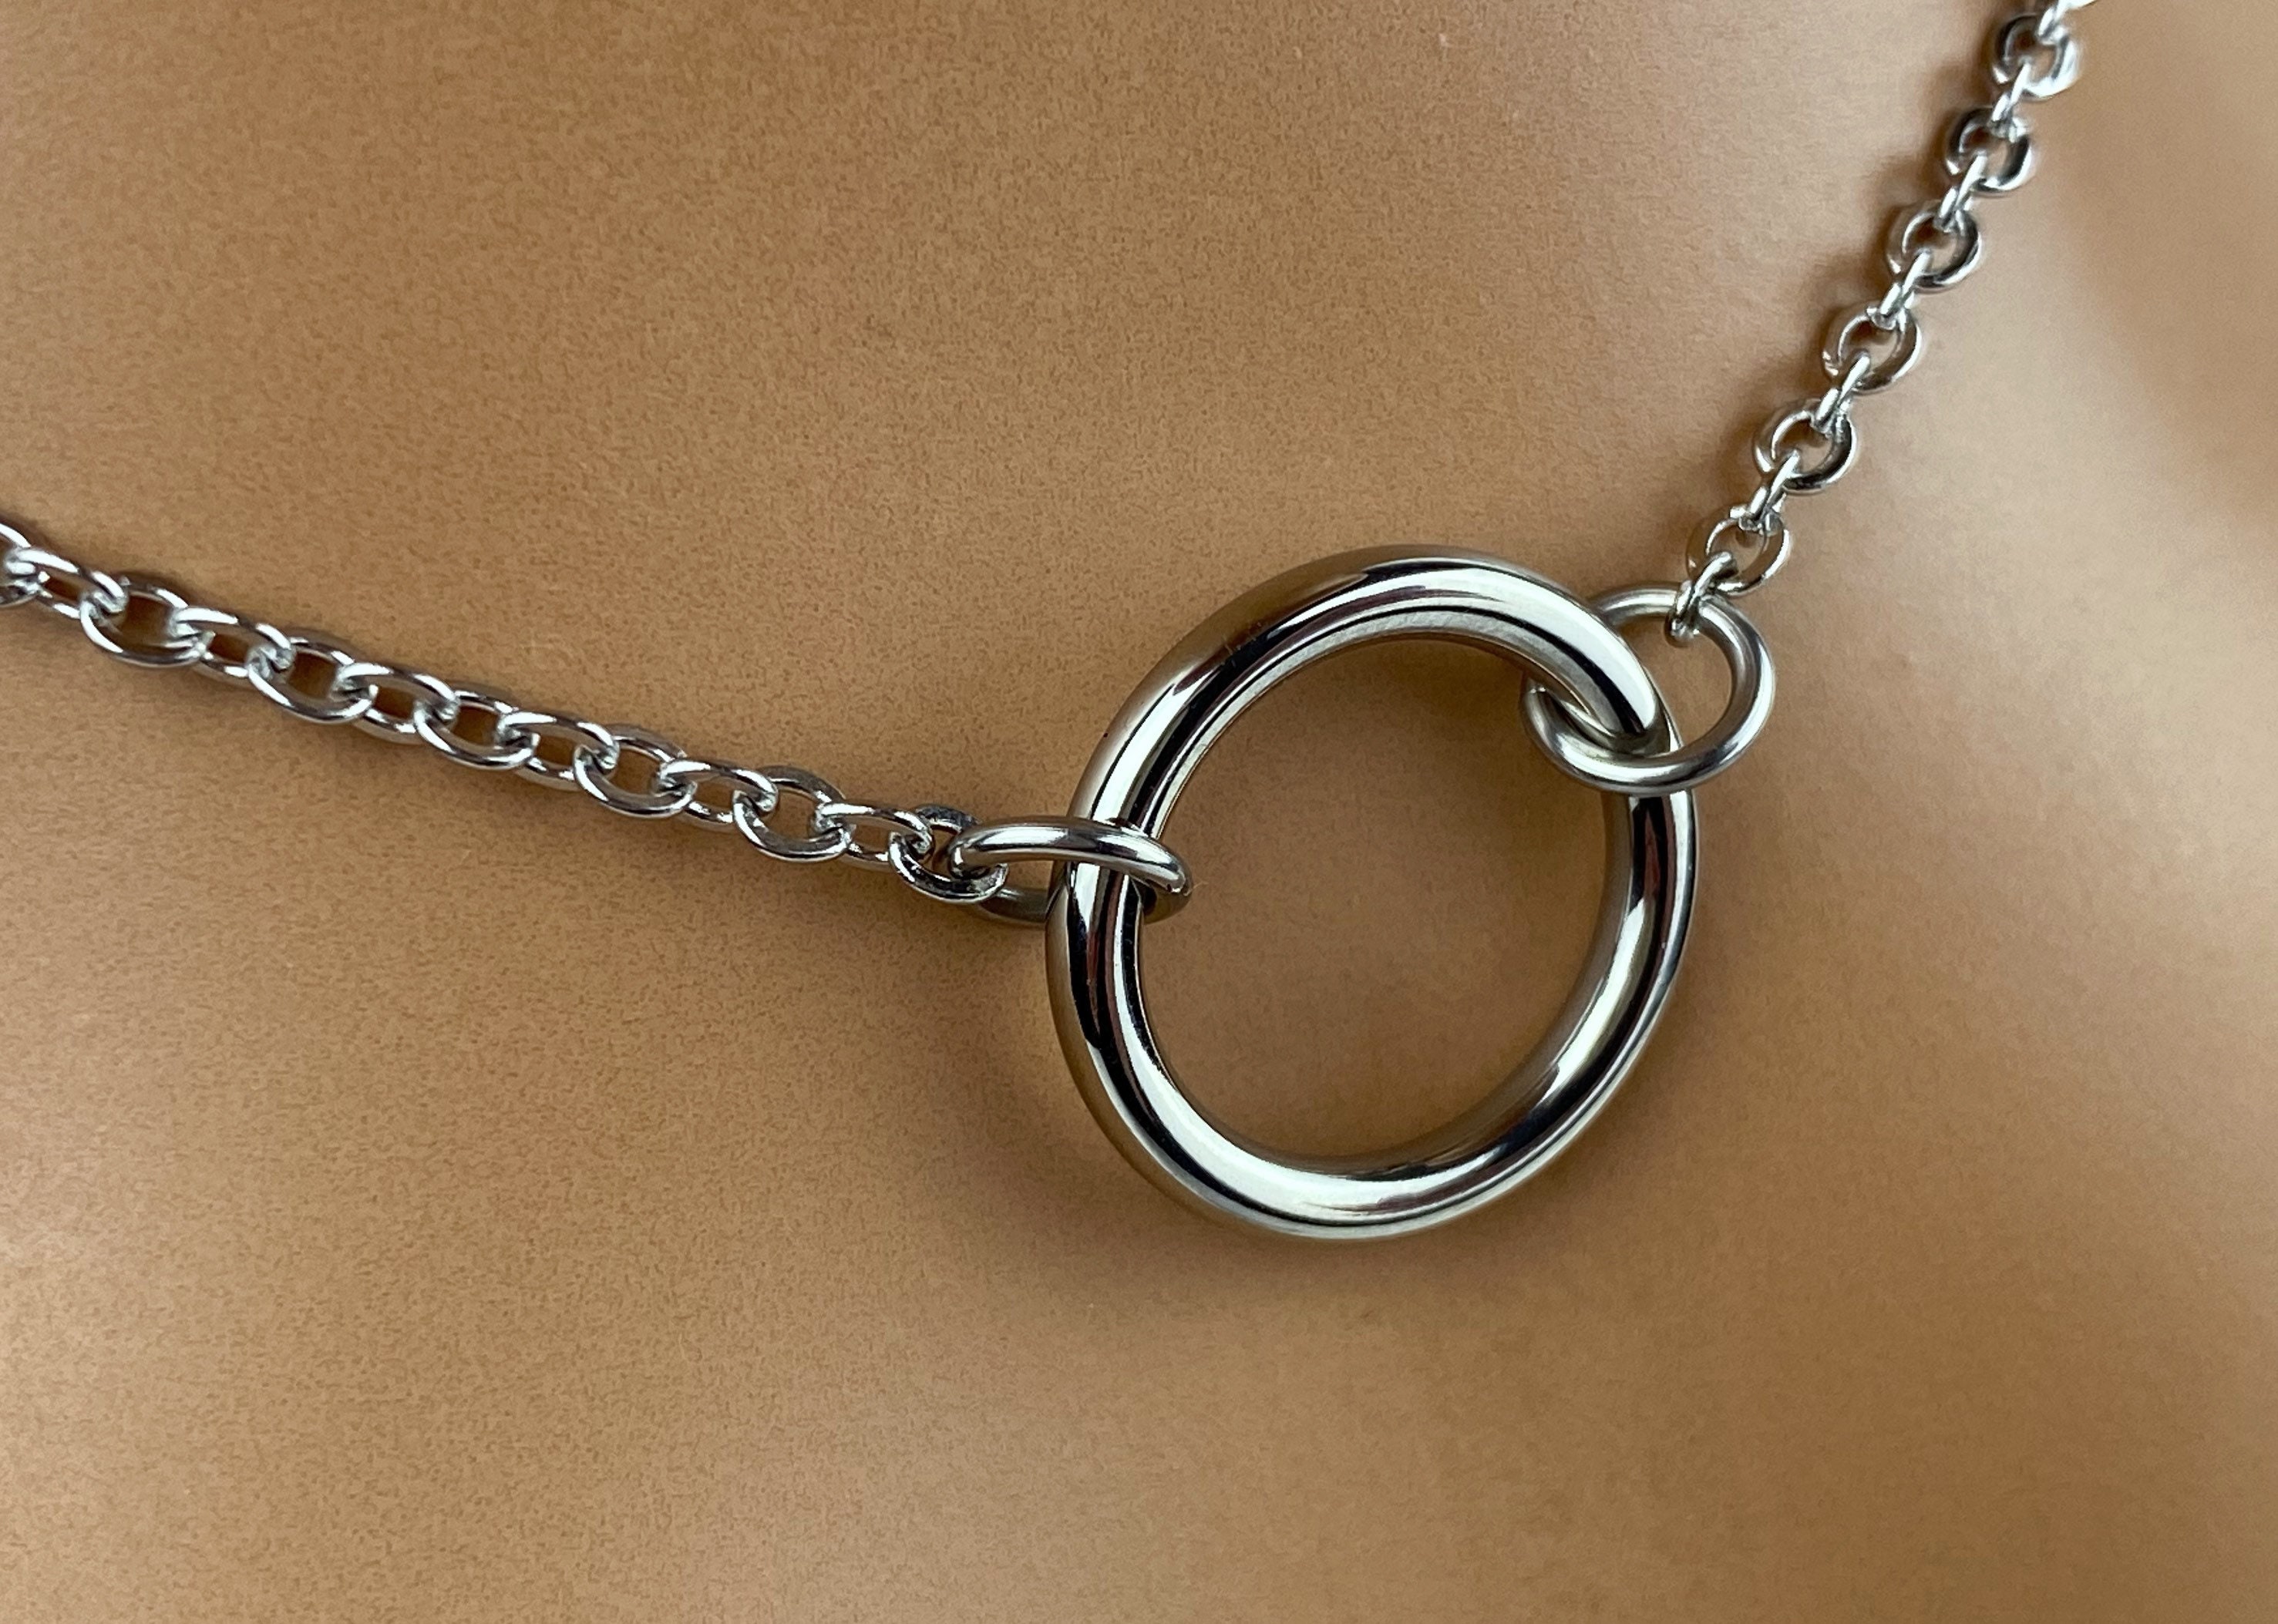 Accessoire bdsm collier bdsm en cuir en forme de pendule - Sextoysunivers